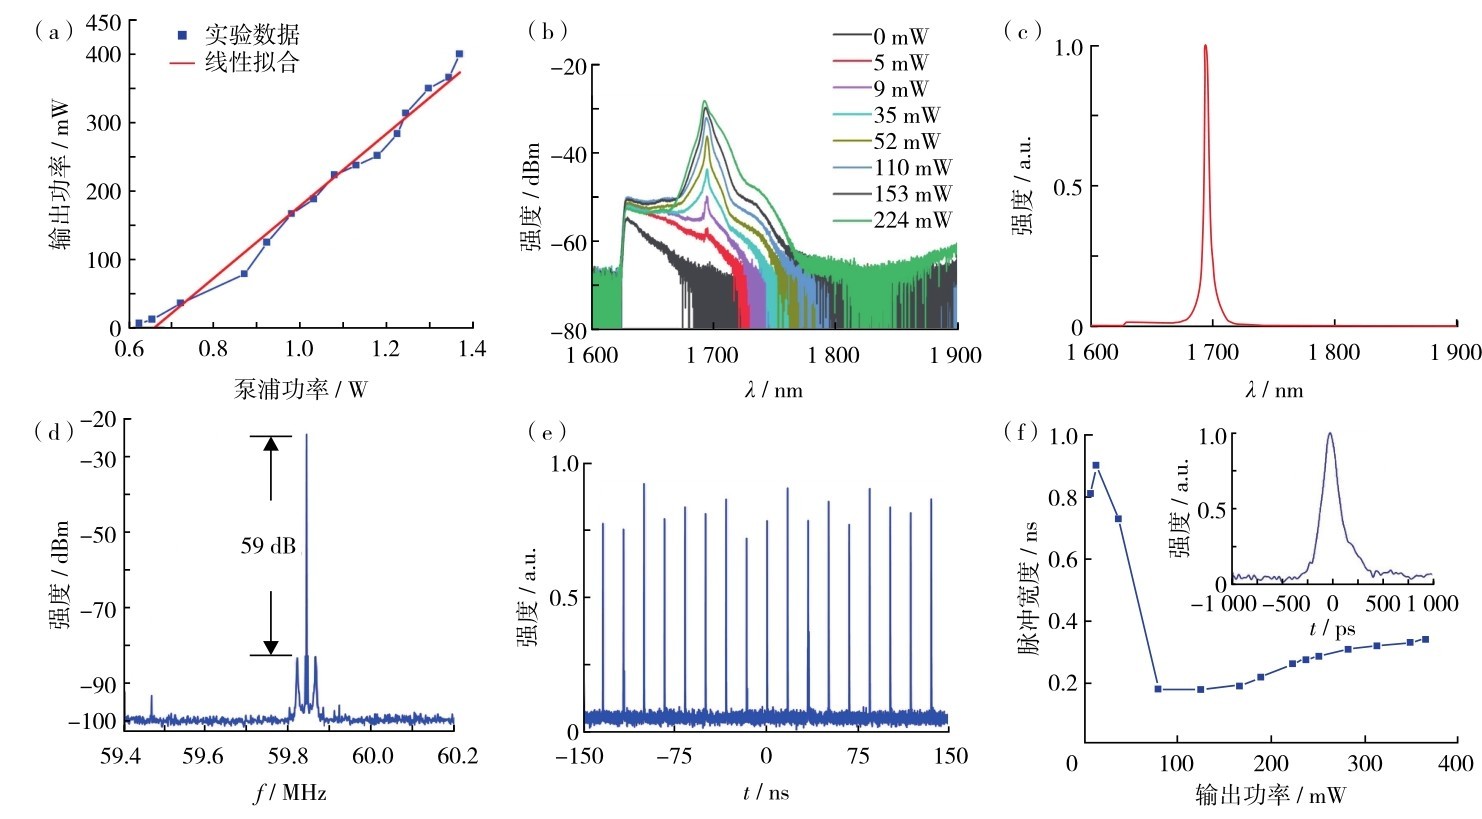 图3 波长1. 7µm皮秒随机分布反馈拉曼光纤激光器的输出特性（a）输出功率曲线；（b）不同输出功率时的光谱；（c）功率为224 mW时的光谱；（d）基频频谱；（e）脉冲序列；（f）不同输出功率时的脉冲宽度变化Fig. 3 (a) Experimental output power (blue line and squares) and the corresponding linear fitting curve (red line), (b) output spectra with input power 0 mW (black line), 5 mW (red line), 9 mW (purple line), 35 mW (sky blue line), 52 mW (yellow brown line), 110 mW (yellow line), 153 mW (grey line) and 224 mW (green line), (c) output spectrum with pump power 224 mW, (d) RF spectrum around the fundamental frequency, (e) pulse train, and (f) pulse width changes with output power of the 1. 7µm picosecond random distributed feedback Raman fiber laser. The inset picture of (f) was the single pulse waveform of the self-synchronized pulse.